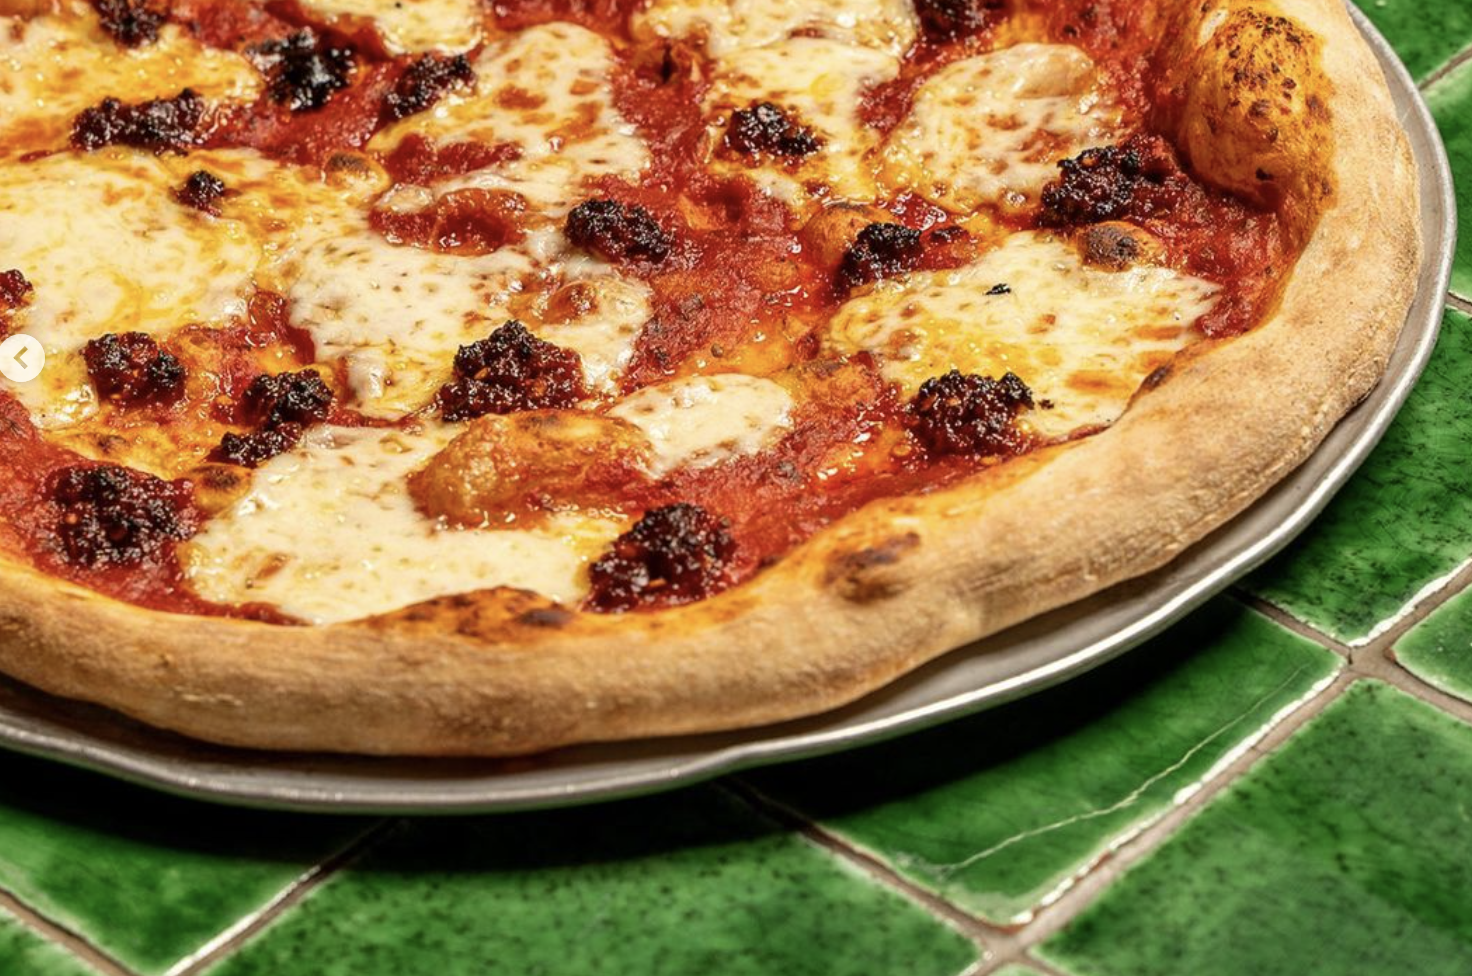 Una de las pizzas neoyorquinas de Slice of New York, en Rota, una de las localidades con más pizzerías por habitante del mundo.